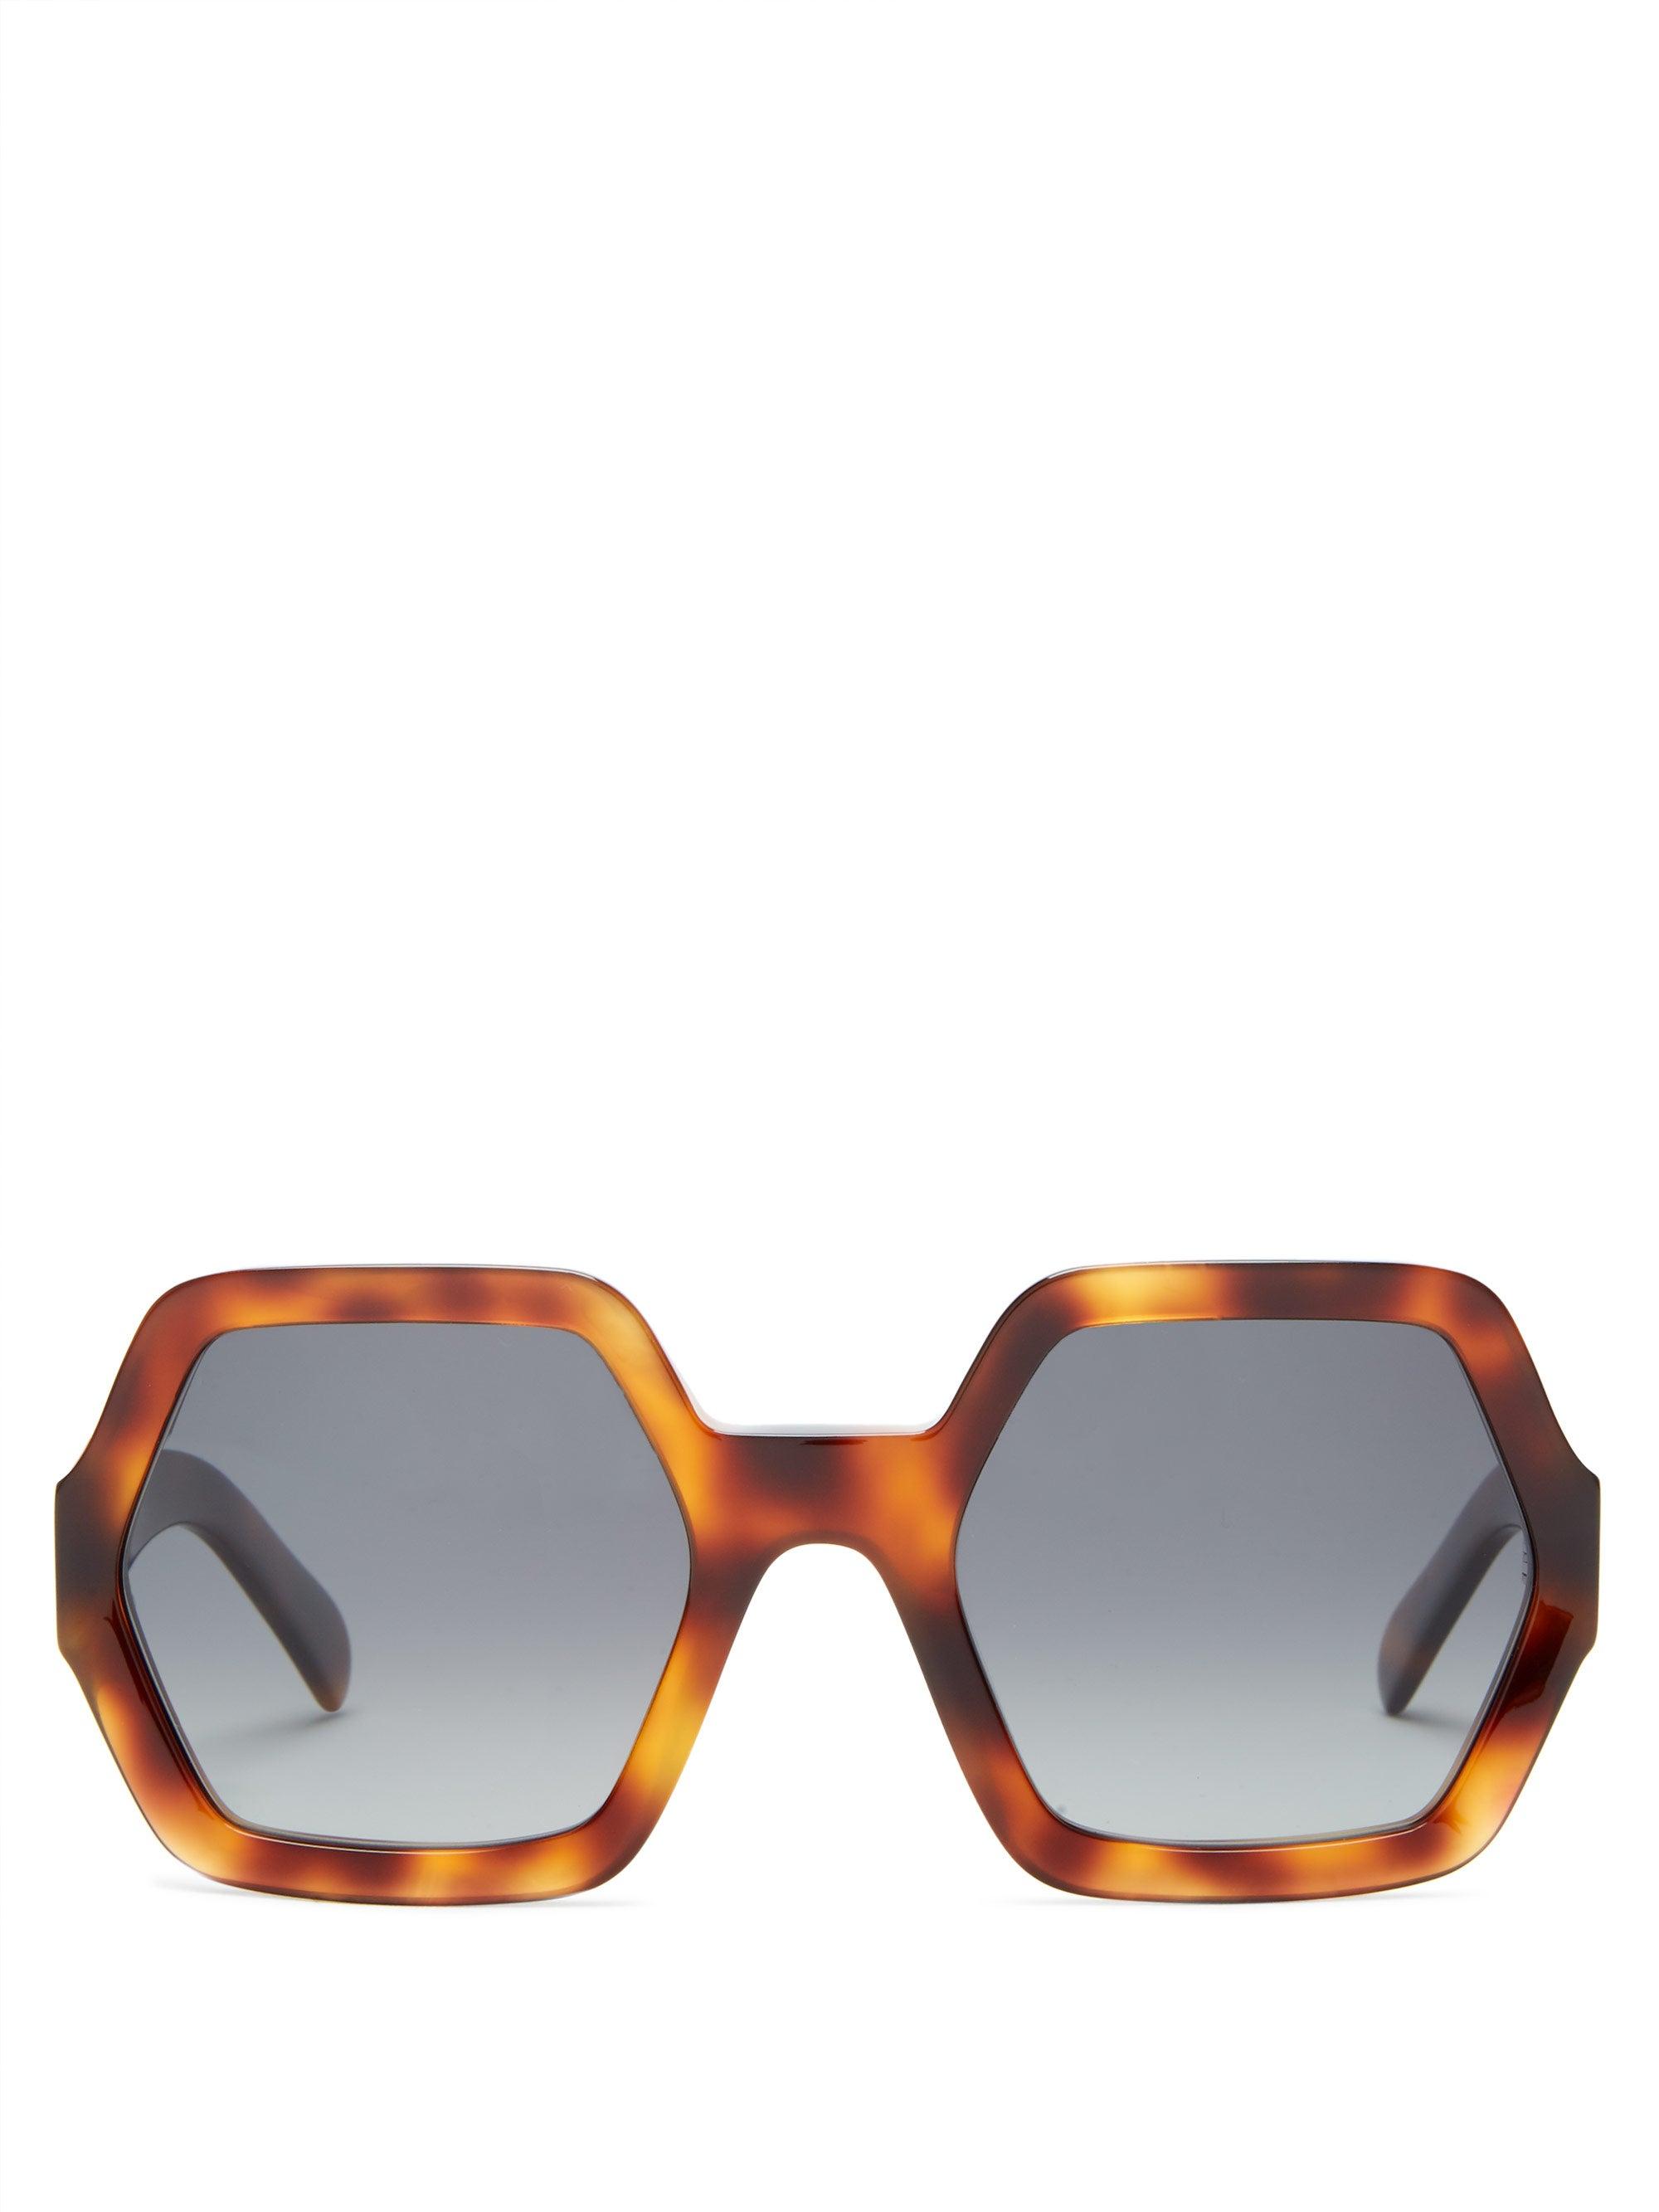 Celine Triomphe Oval Sunglasses | CELINE | Sunglasses | Miinto